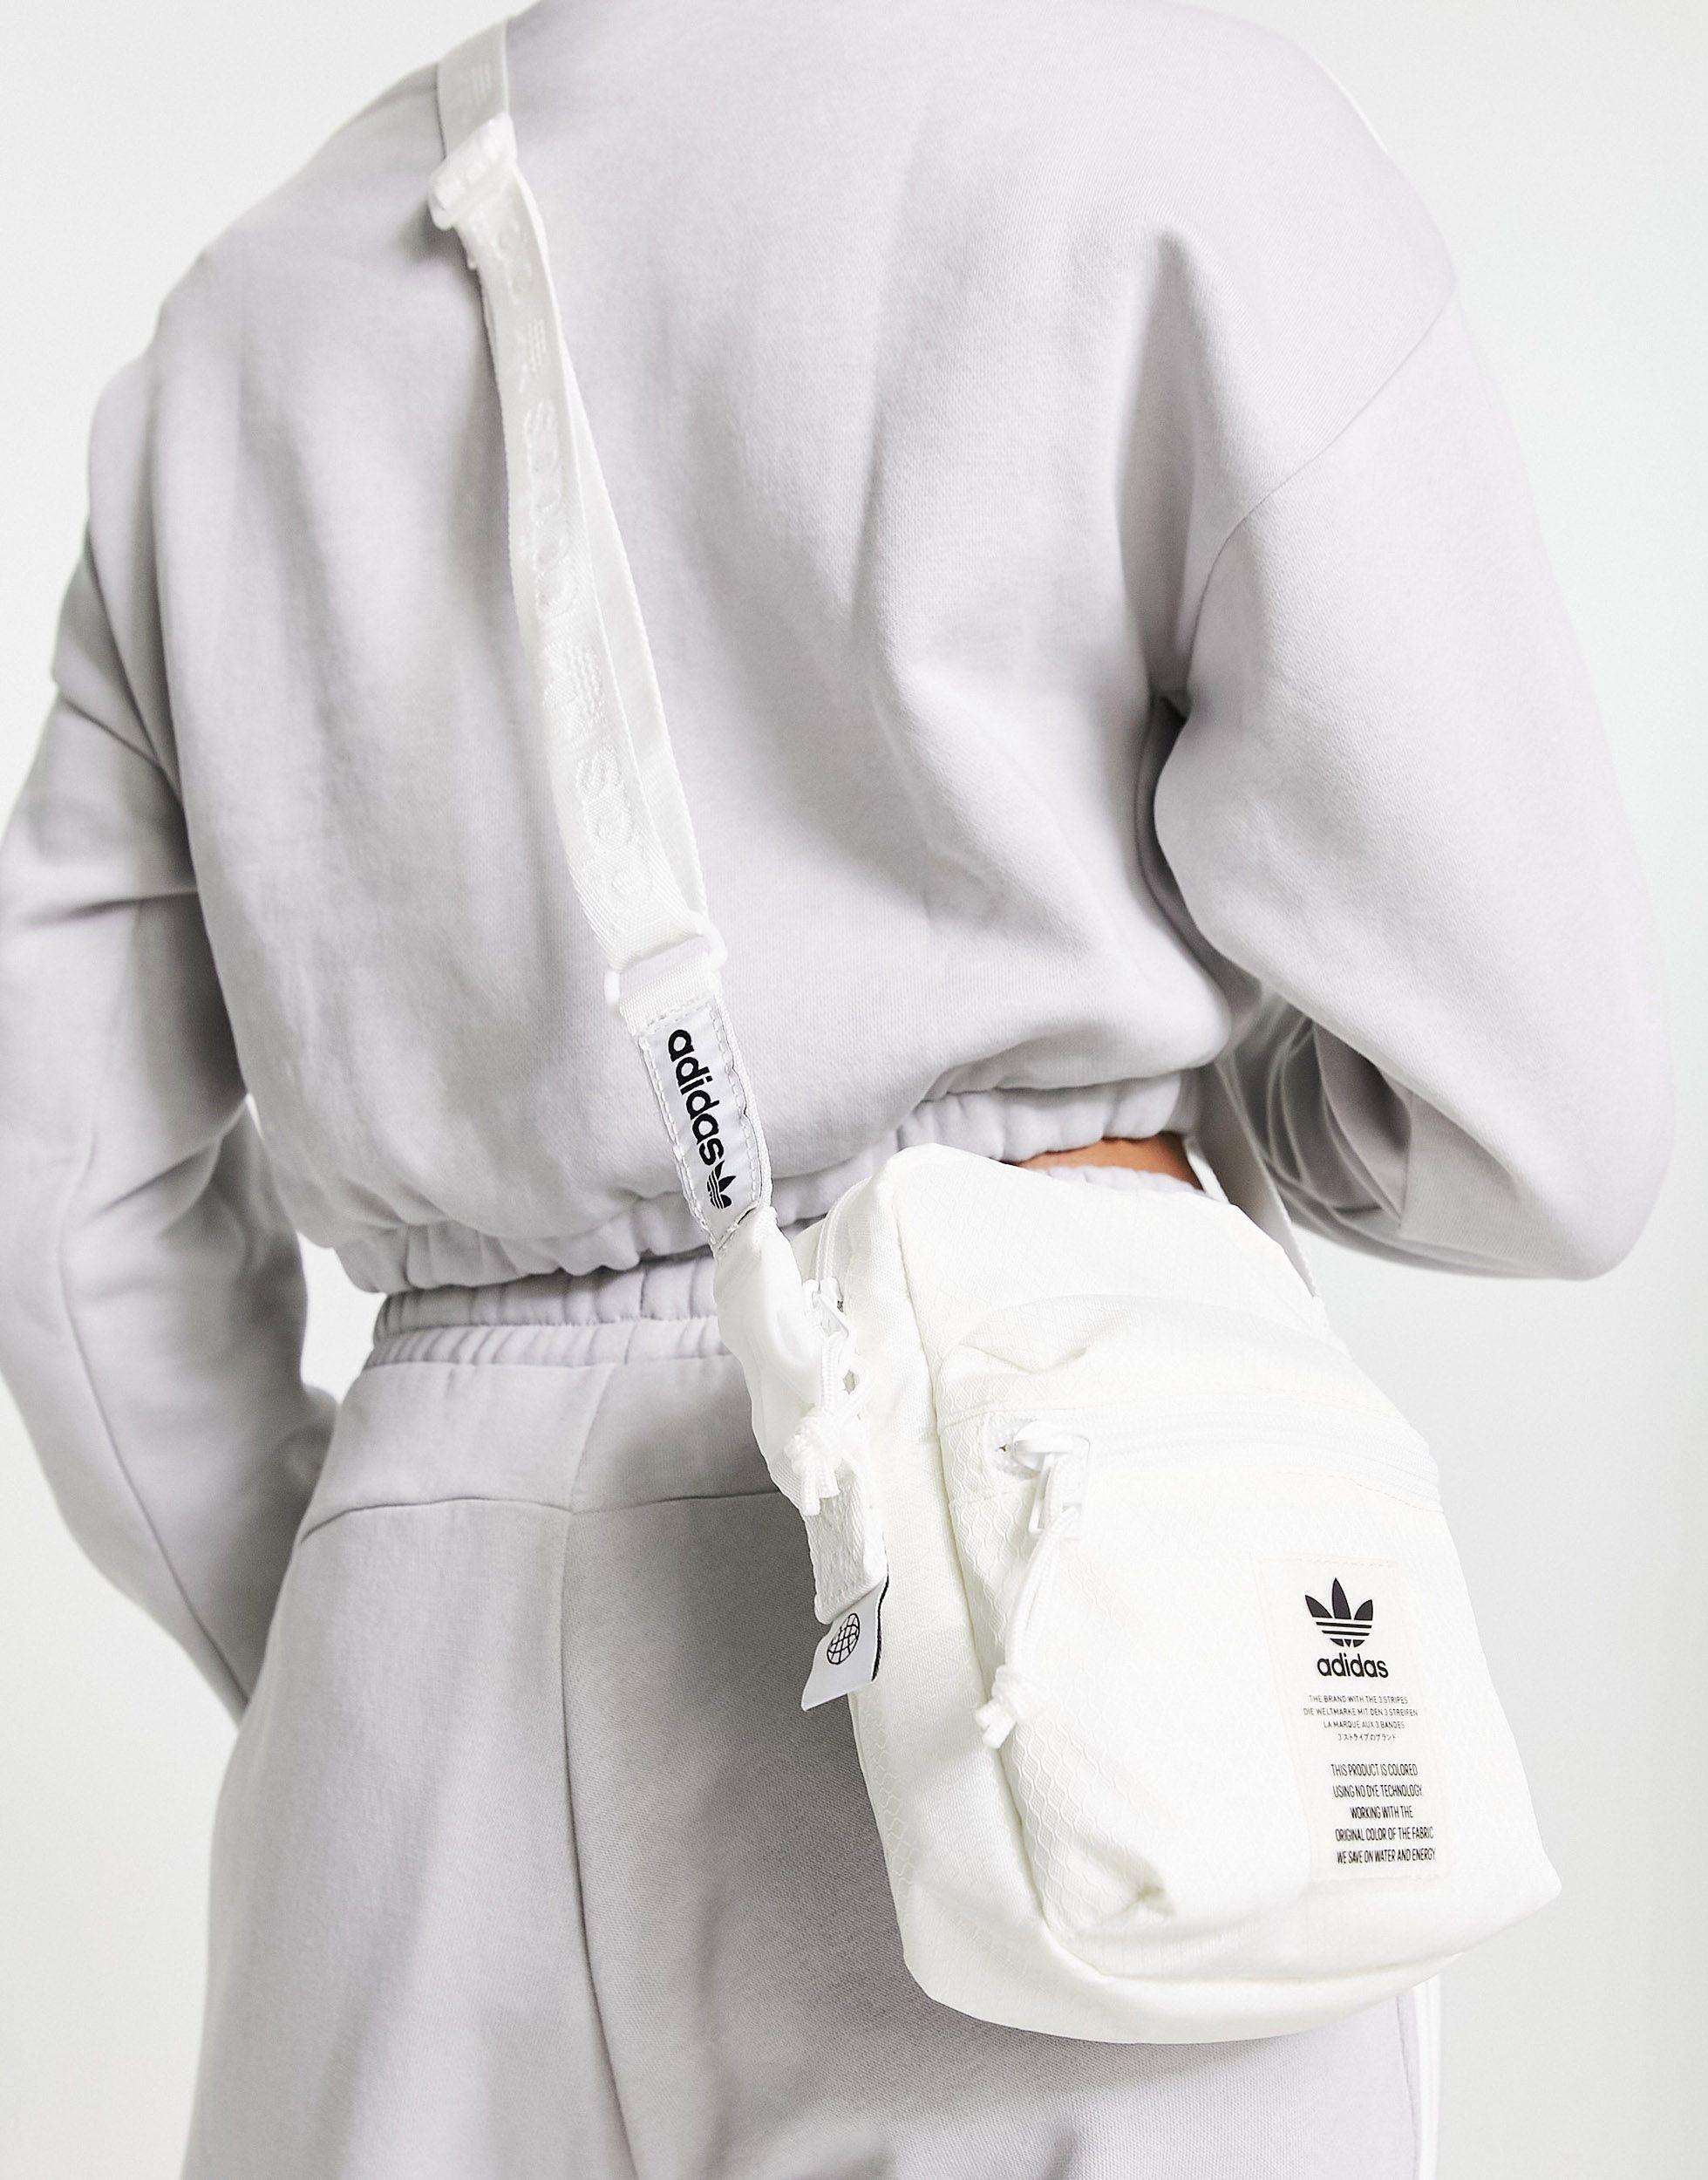 adidas Originals Unisex Festival Crossbody Bag, Black/White, ONE